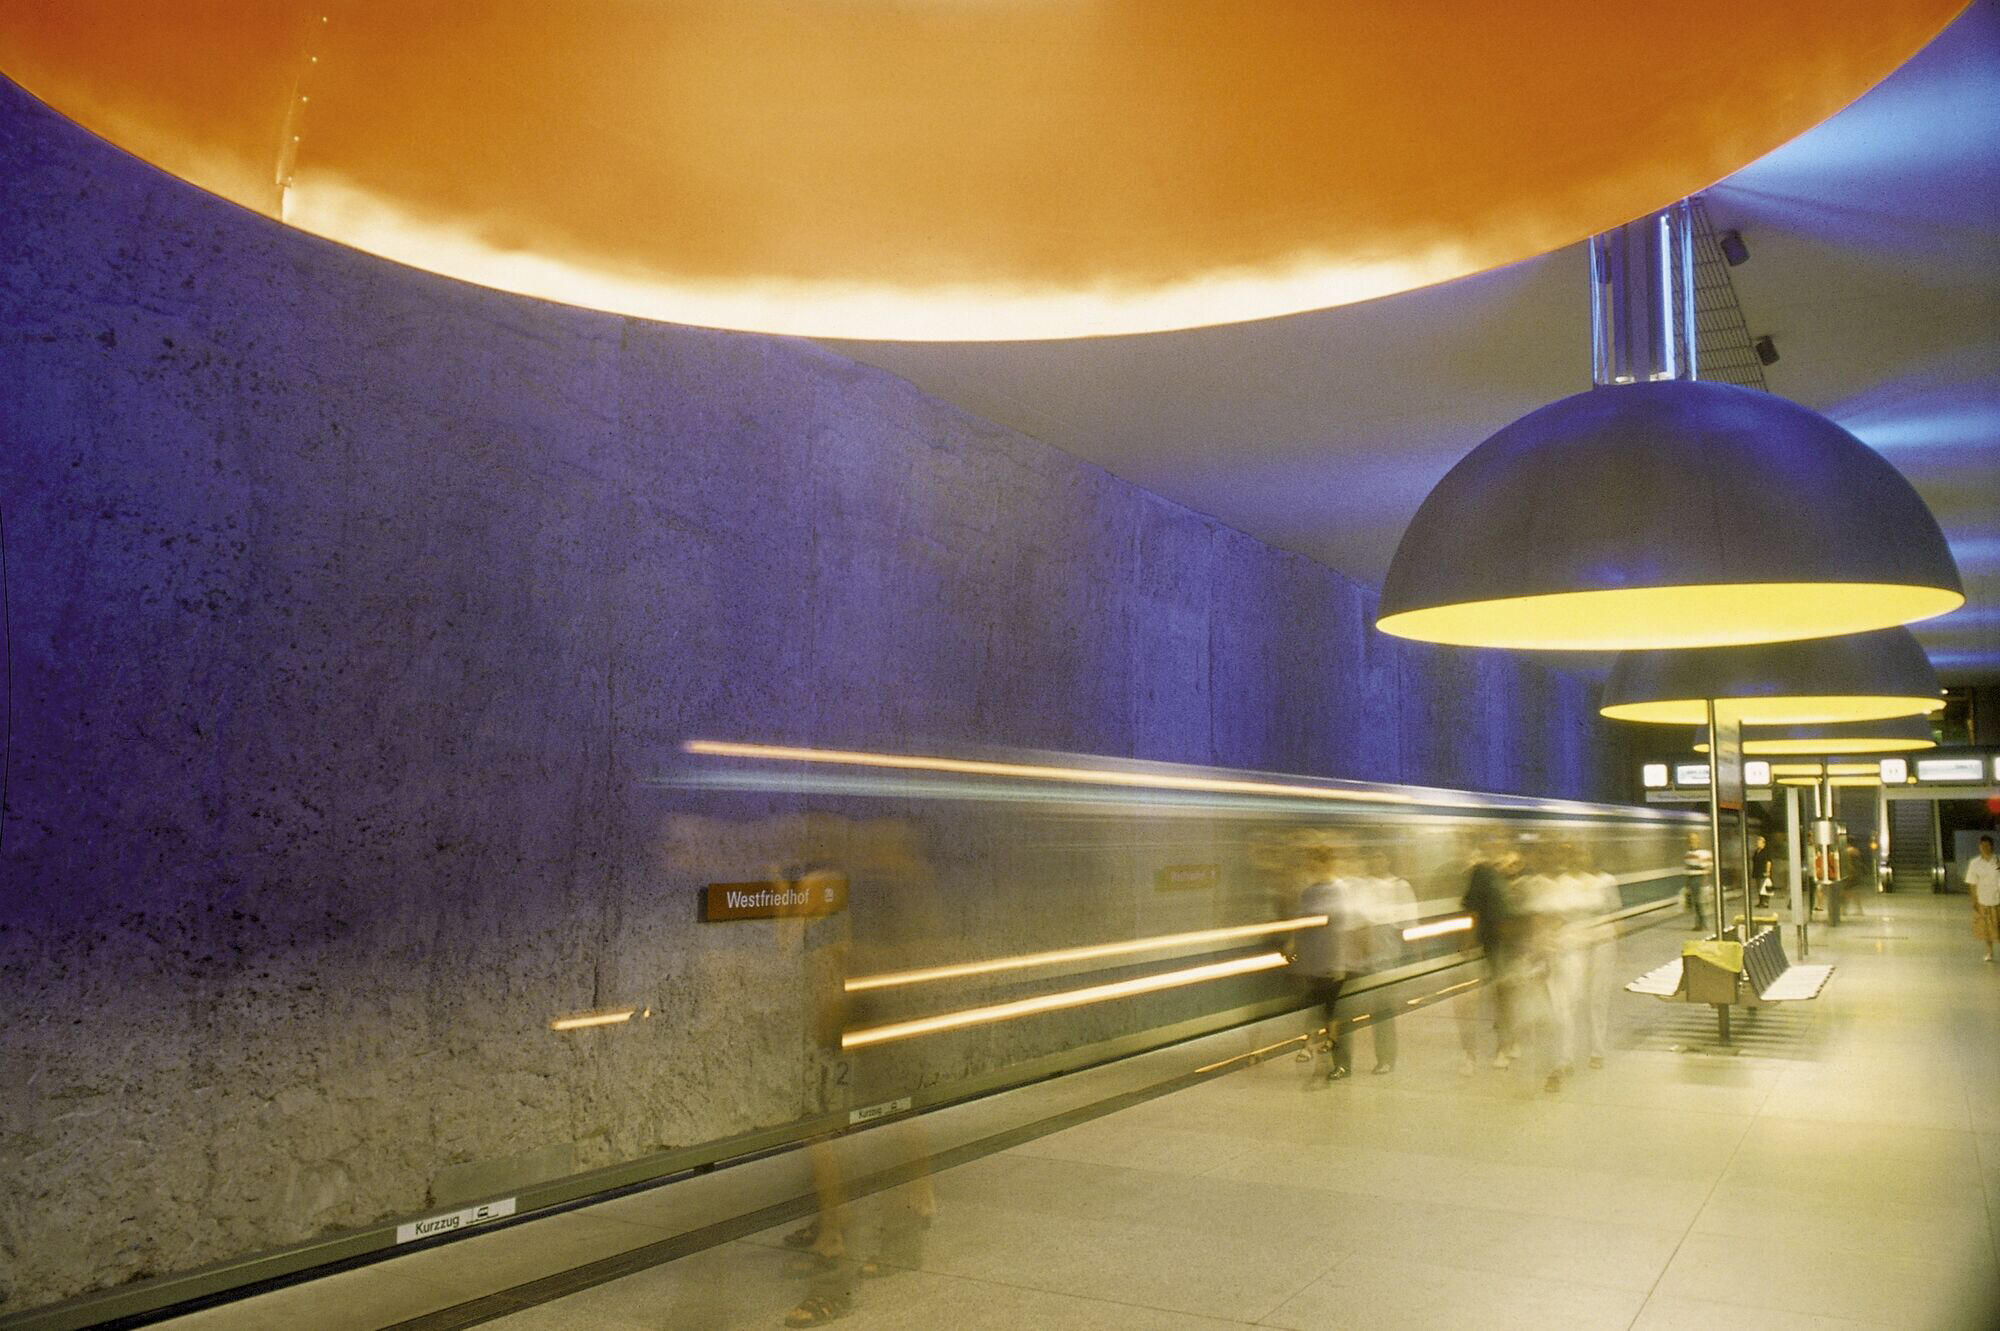 U-Bahn Station in München mit Blick auf Lampeninstallationen von Ingo Maurer und Menschen in Bewegung im Hintergrund